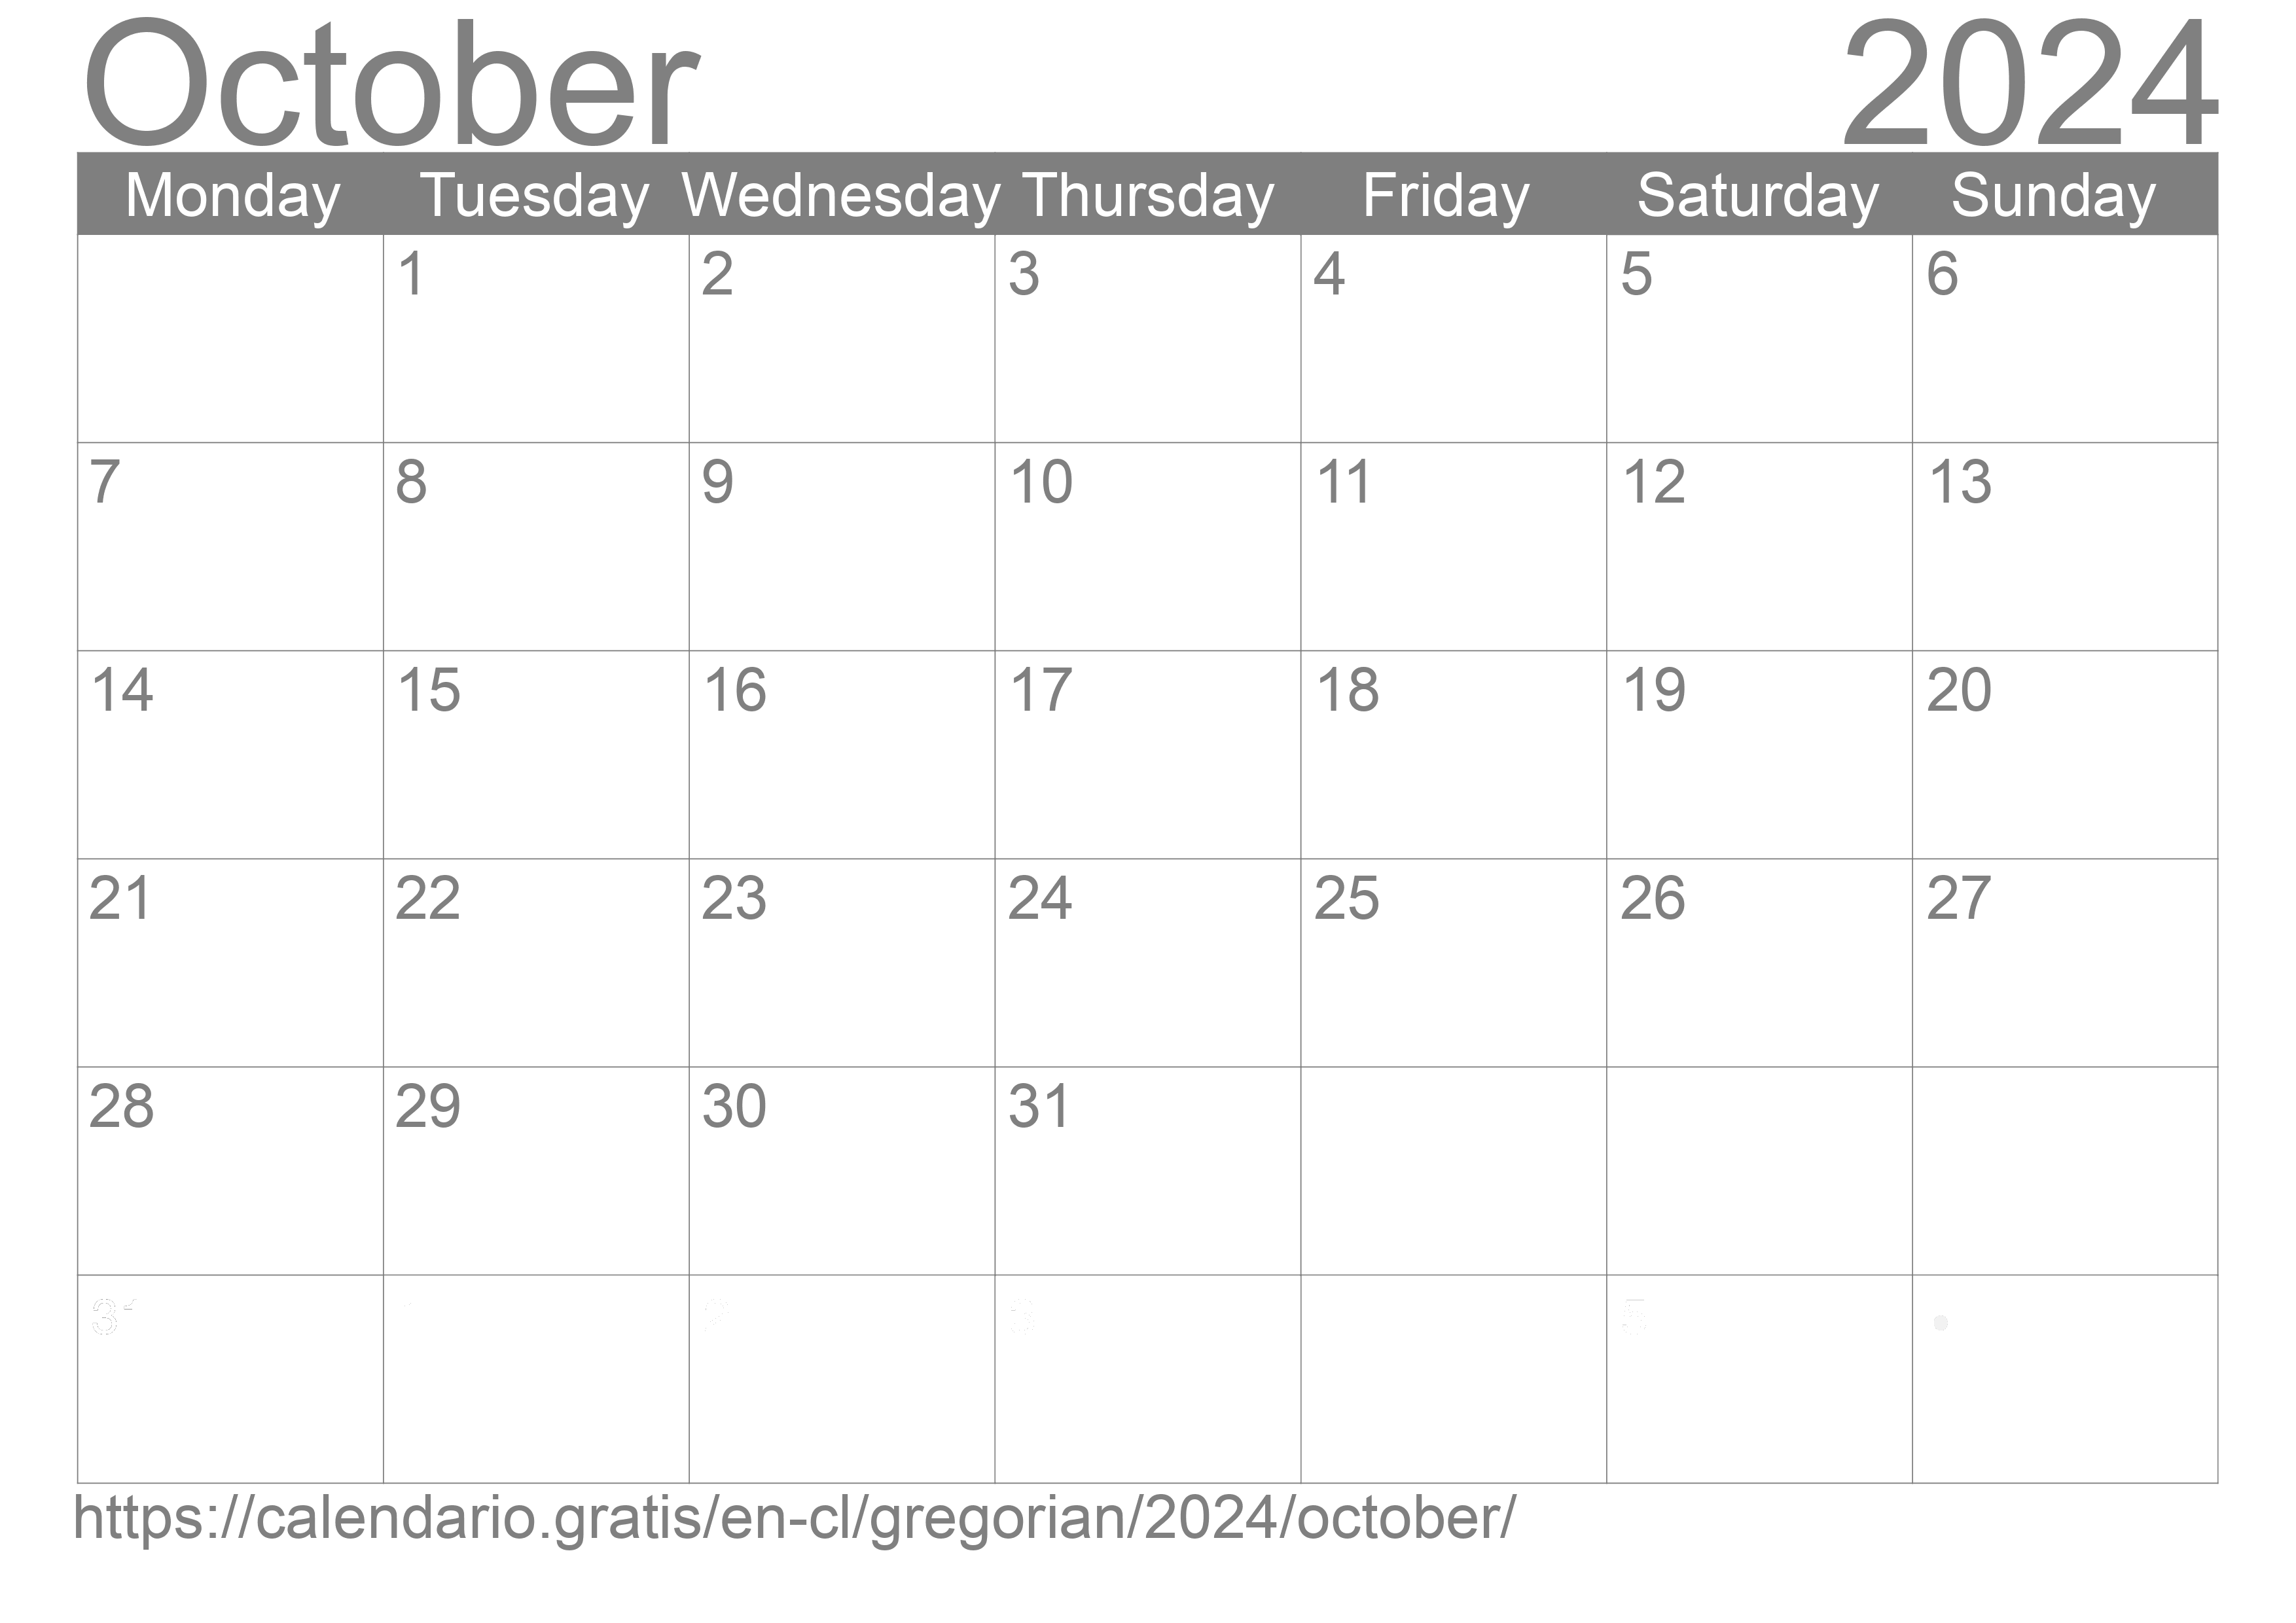 Calendar October 2024 to print